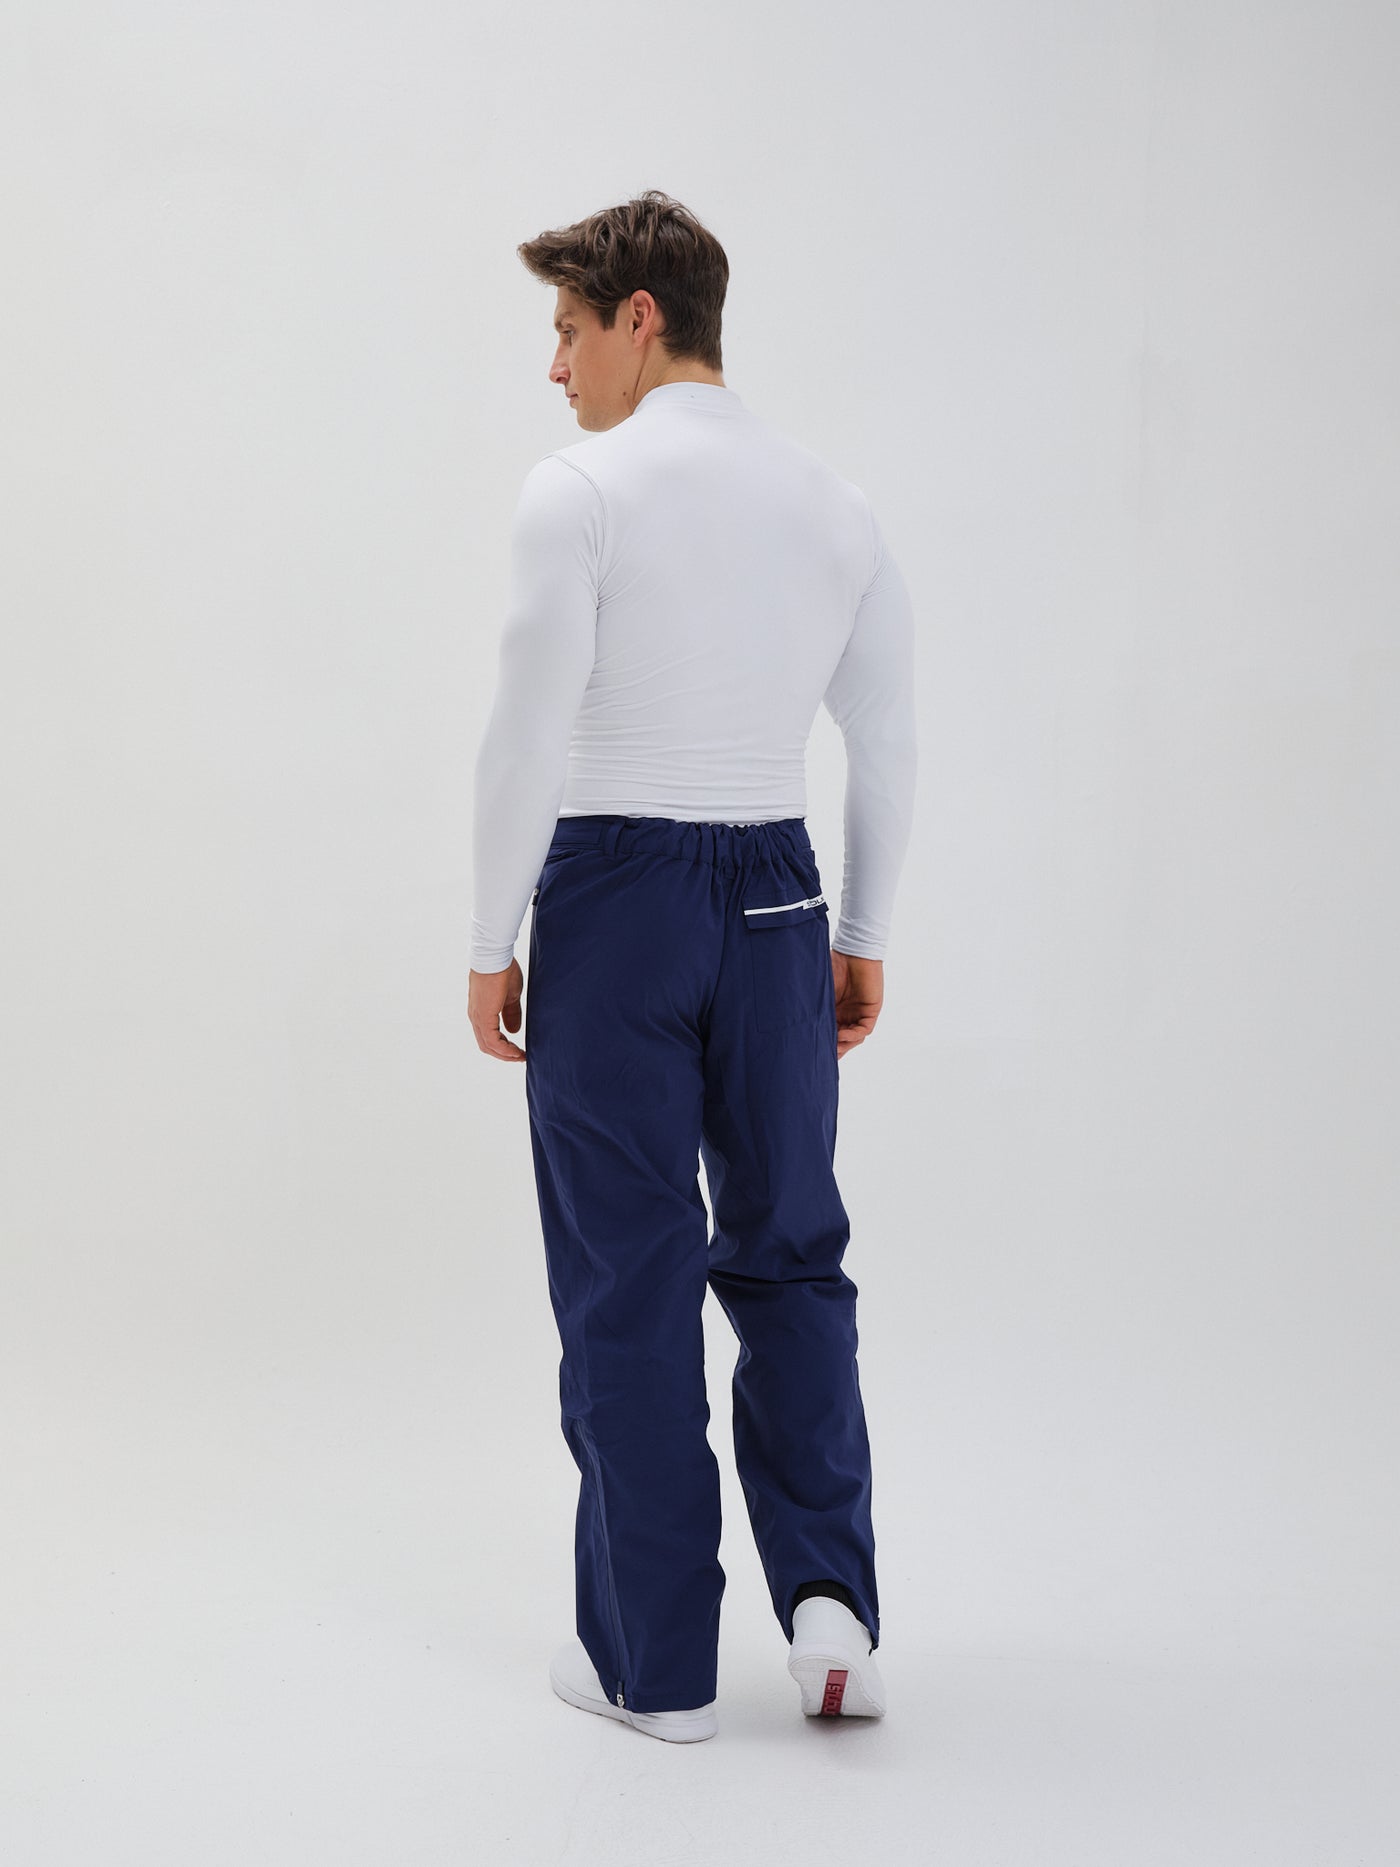 Rab Firewall Pants  Waterproof Trousers Mens  Buy online   Alpinetrekcouk